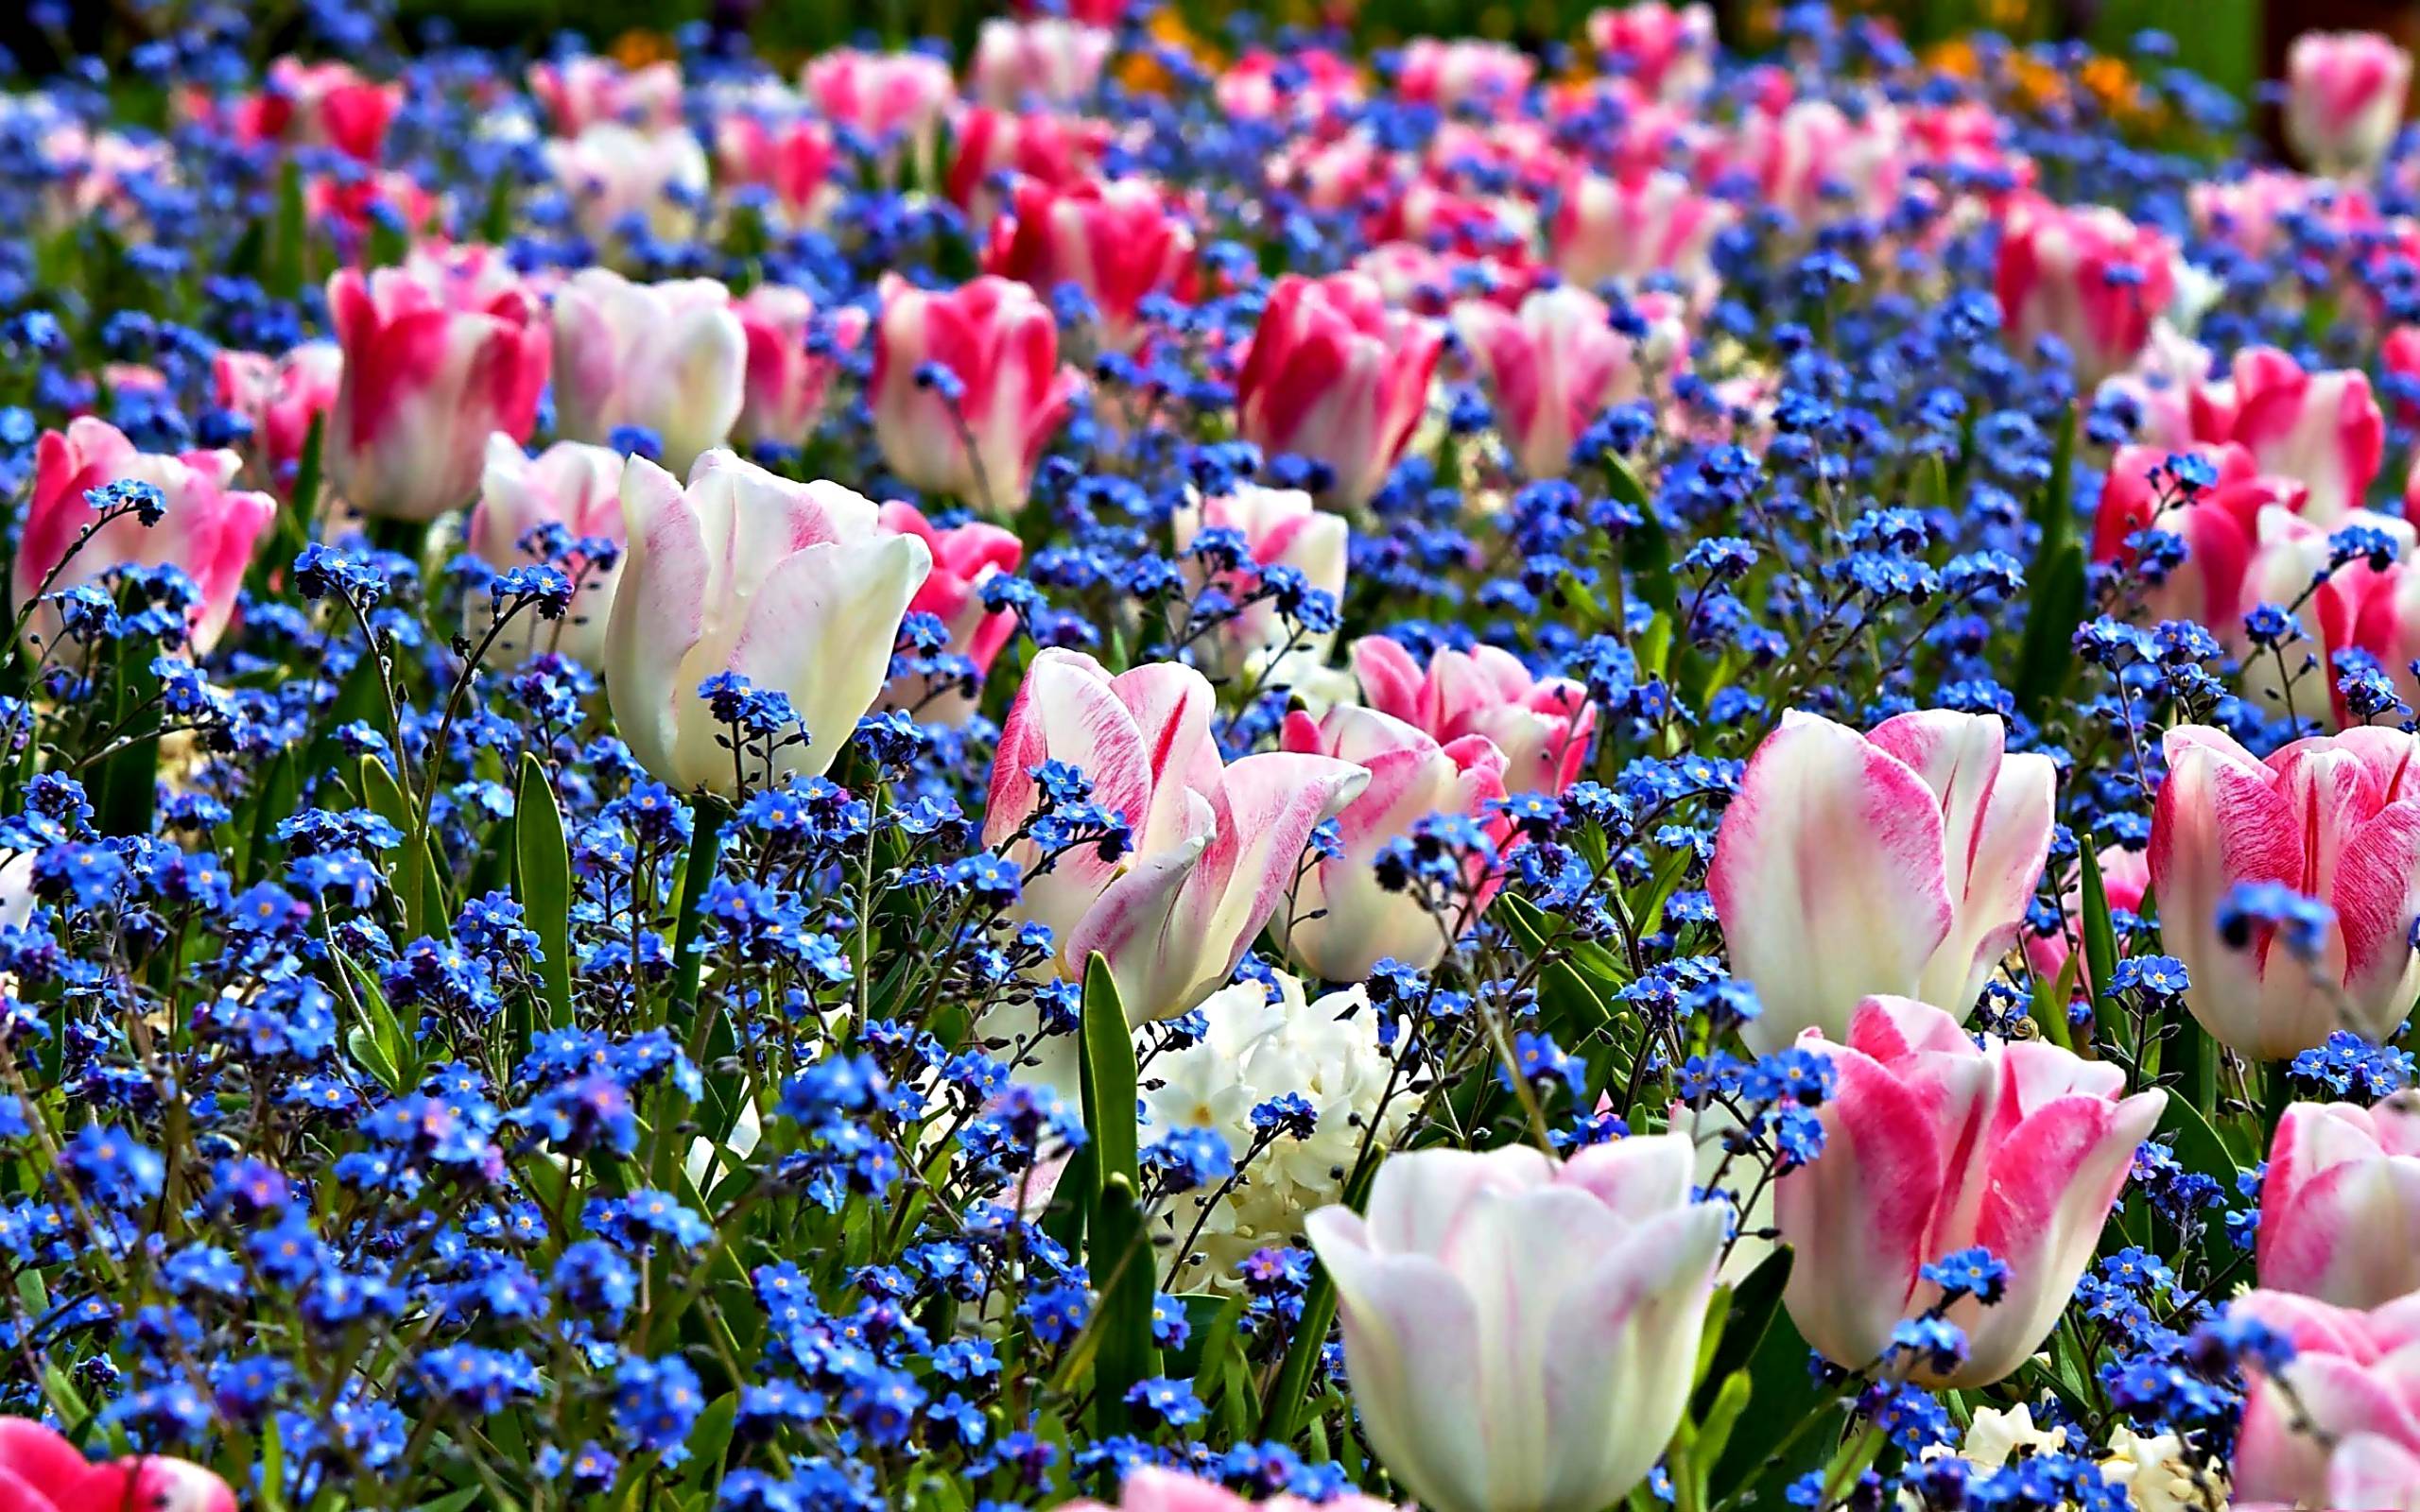 Spring Flowers Desktop Wallpaper At Wallpaperbro